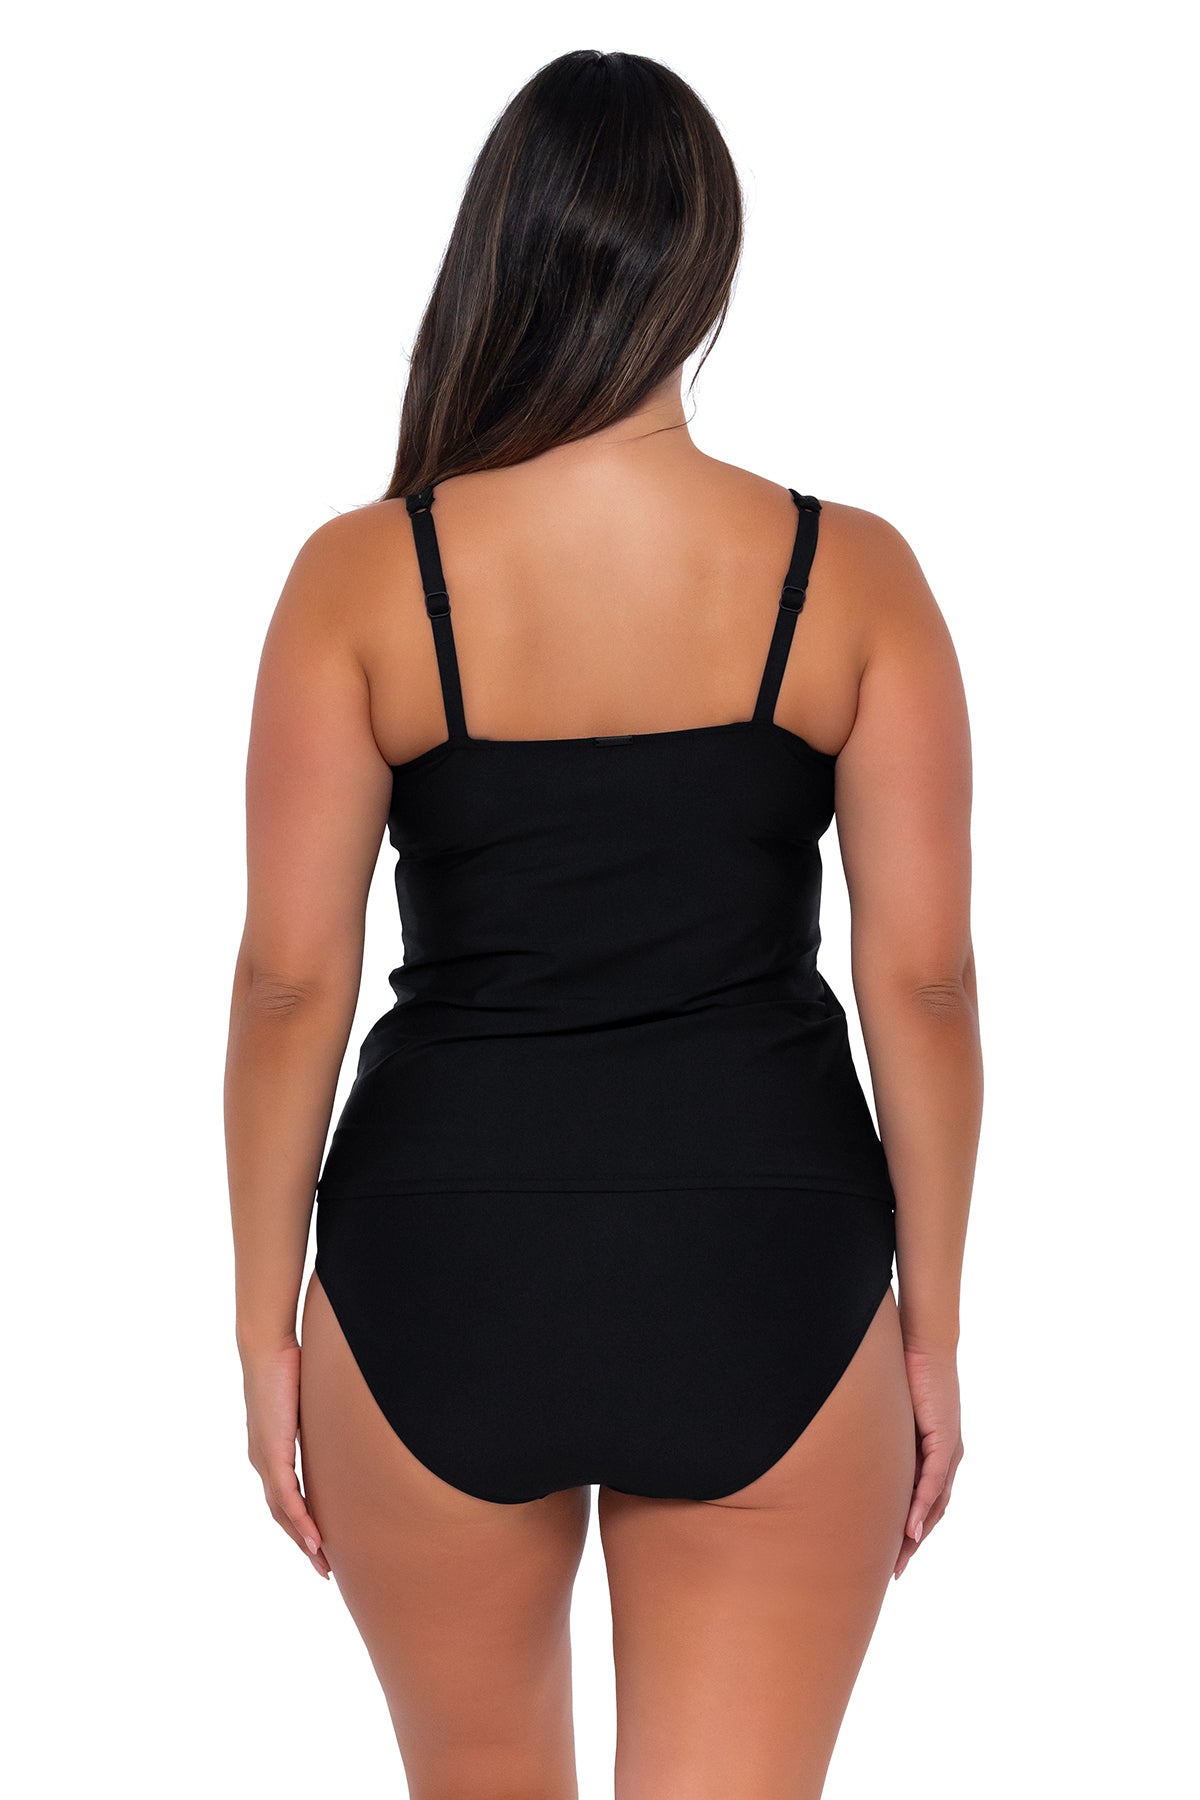 PROFILE Women's Black Built-In Bra Underwire Swim Tankini Top Size 32D NWT